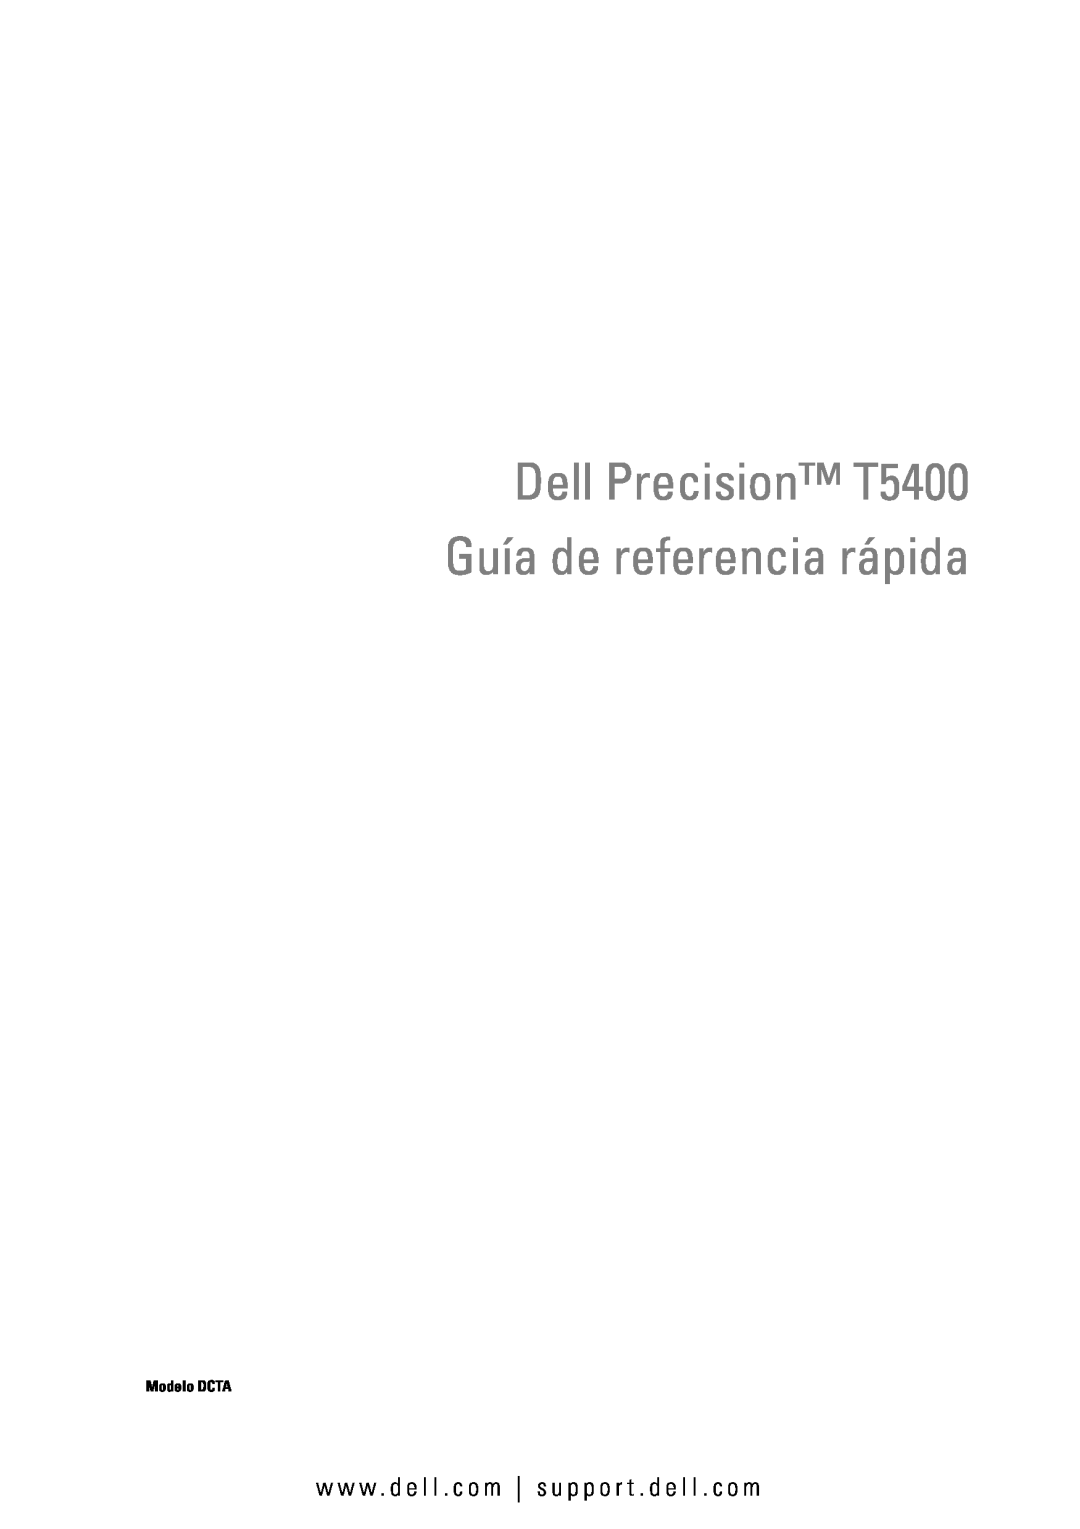 Dell manual Dell Precision T5400 Guía de referencia rápida, w w w . d e l l . c o m s u p p o r t . d e l l . c o m 